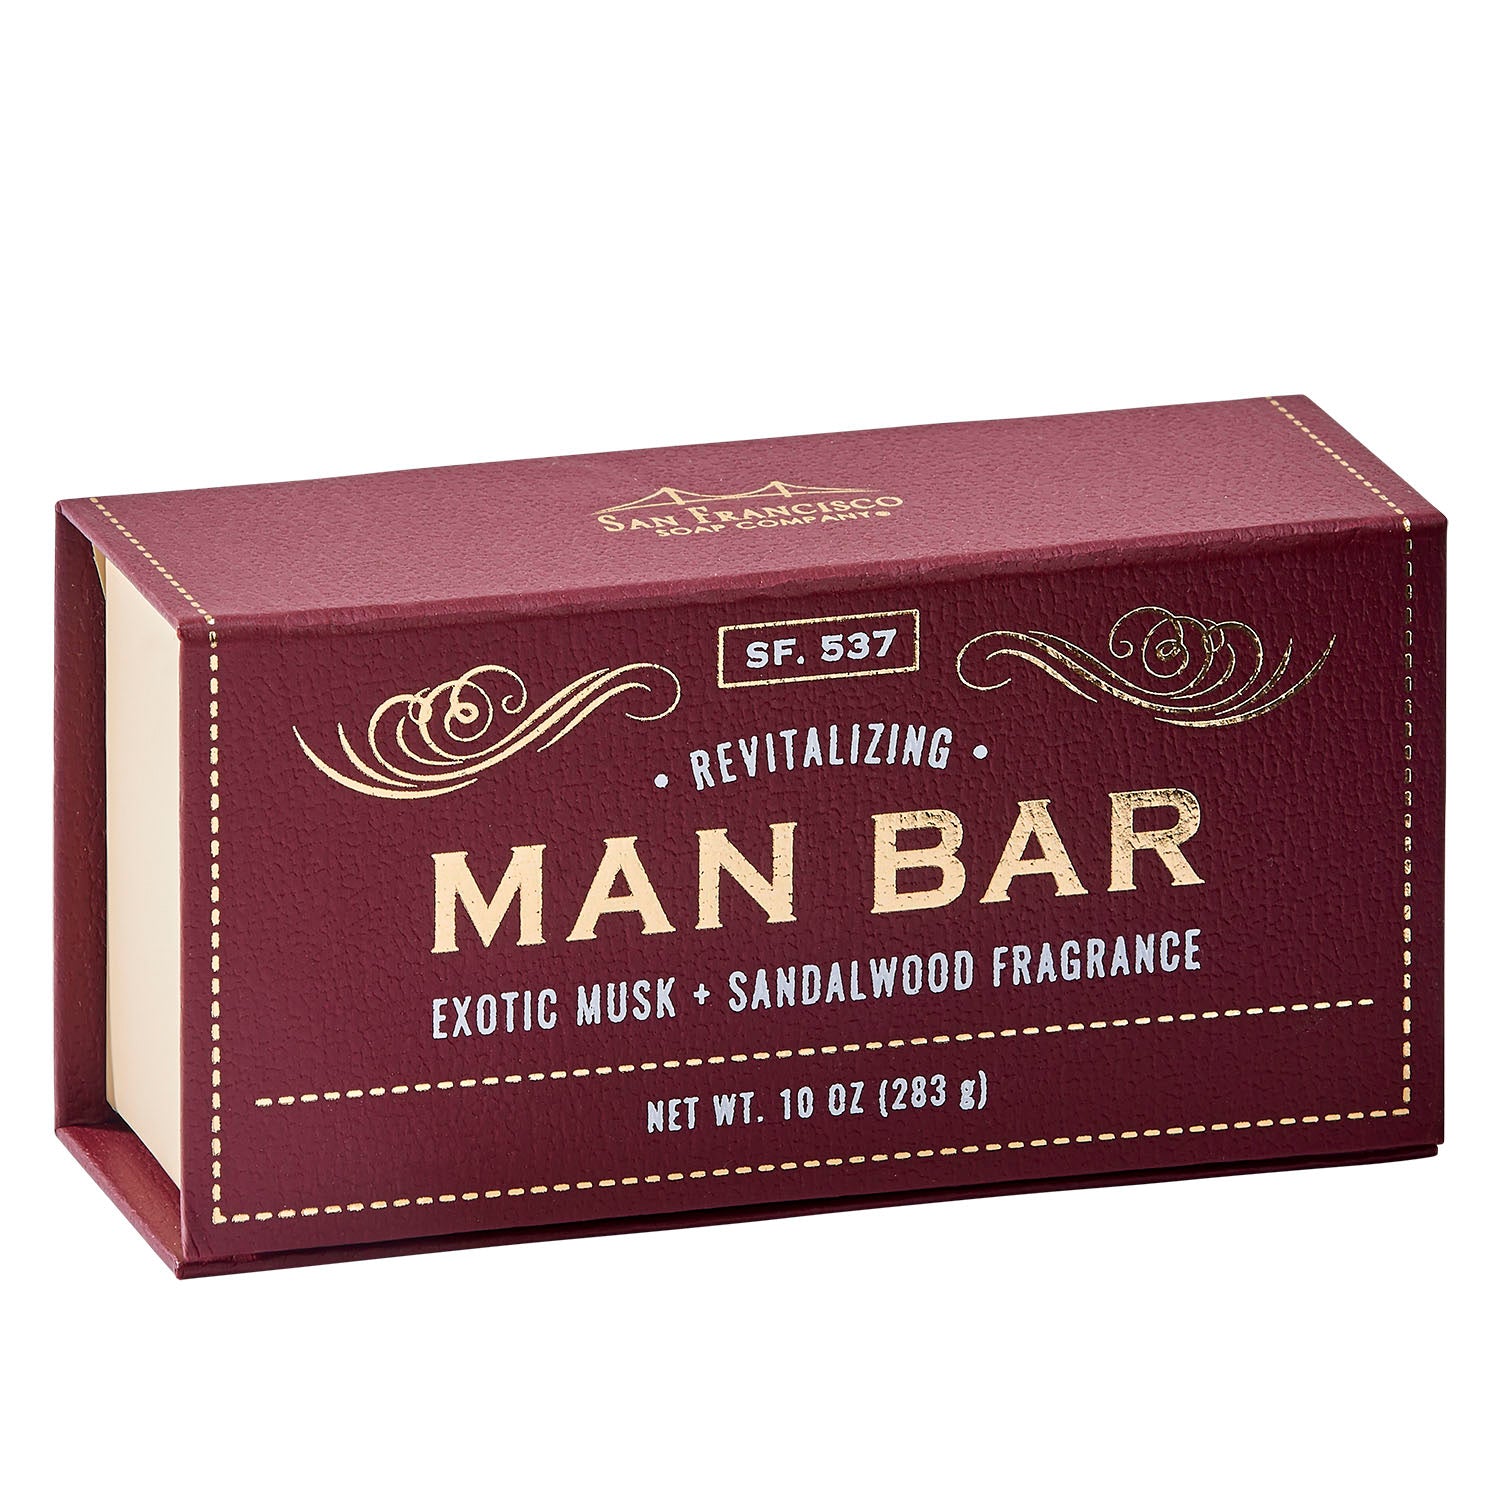 Bar Soap - Men's III (Seductive & Sophisticated) Scent